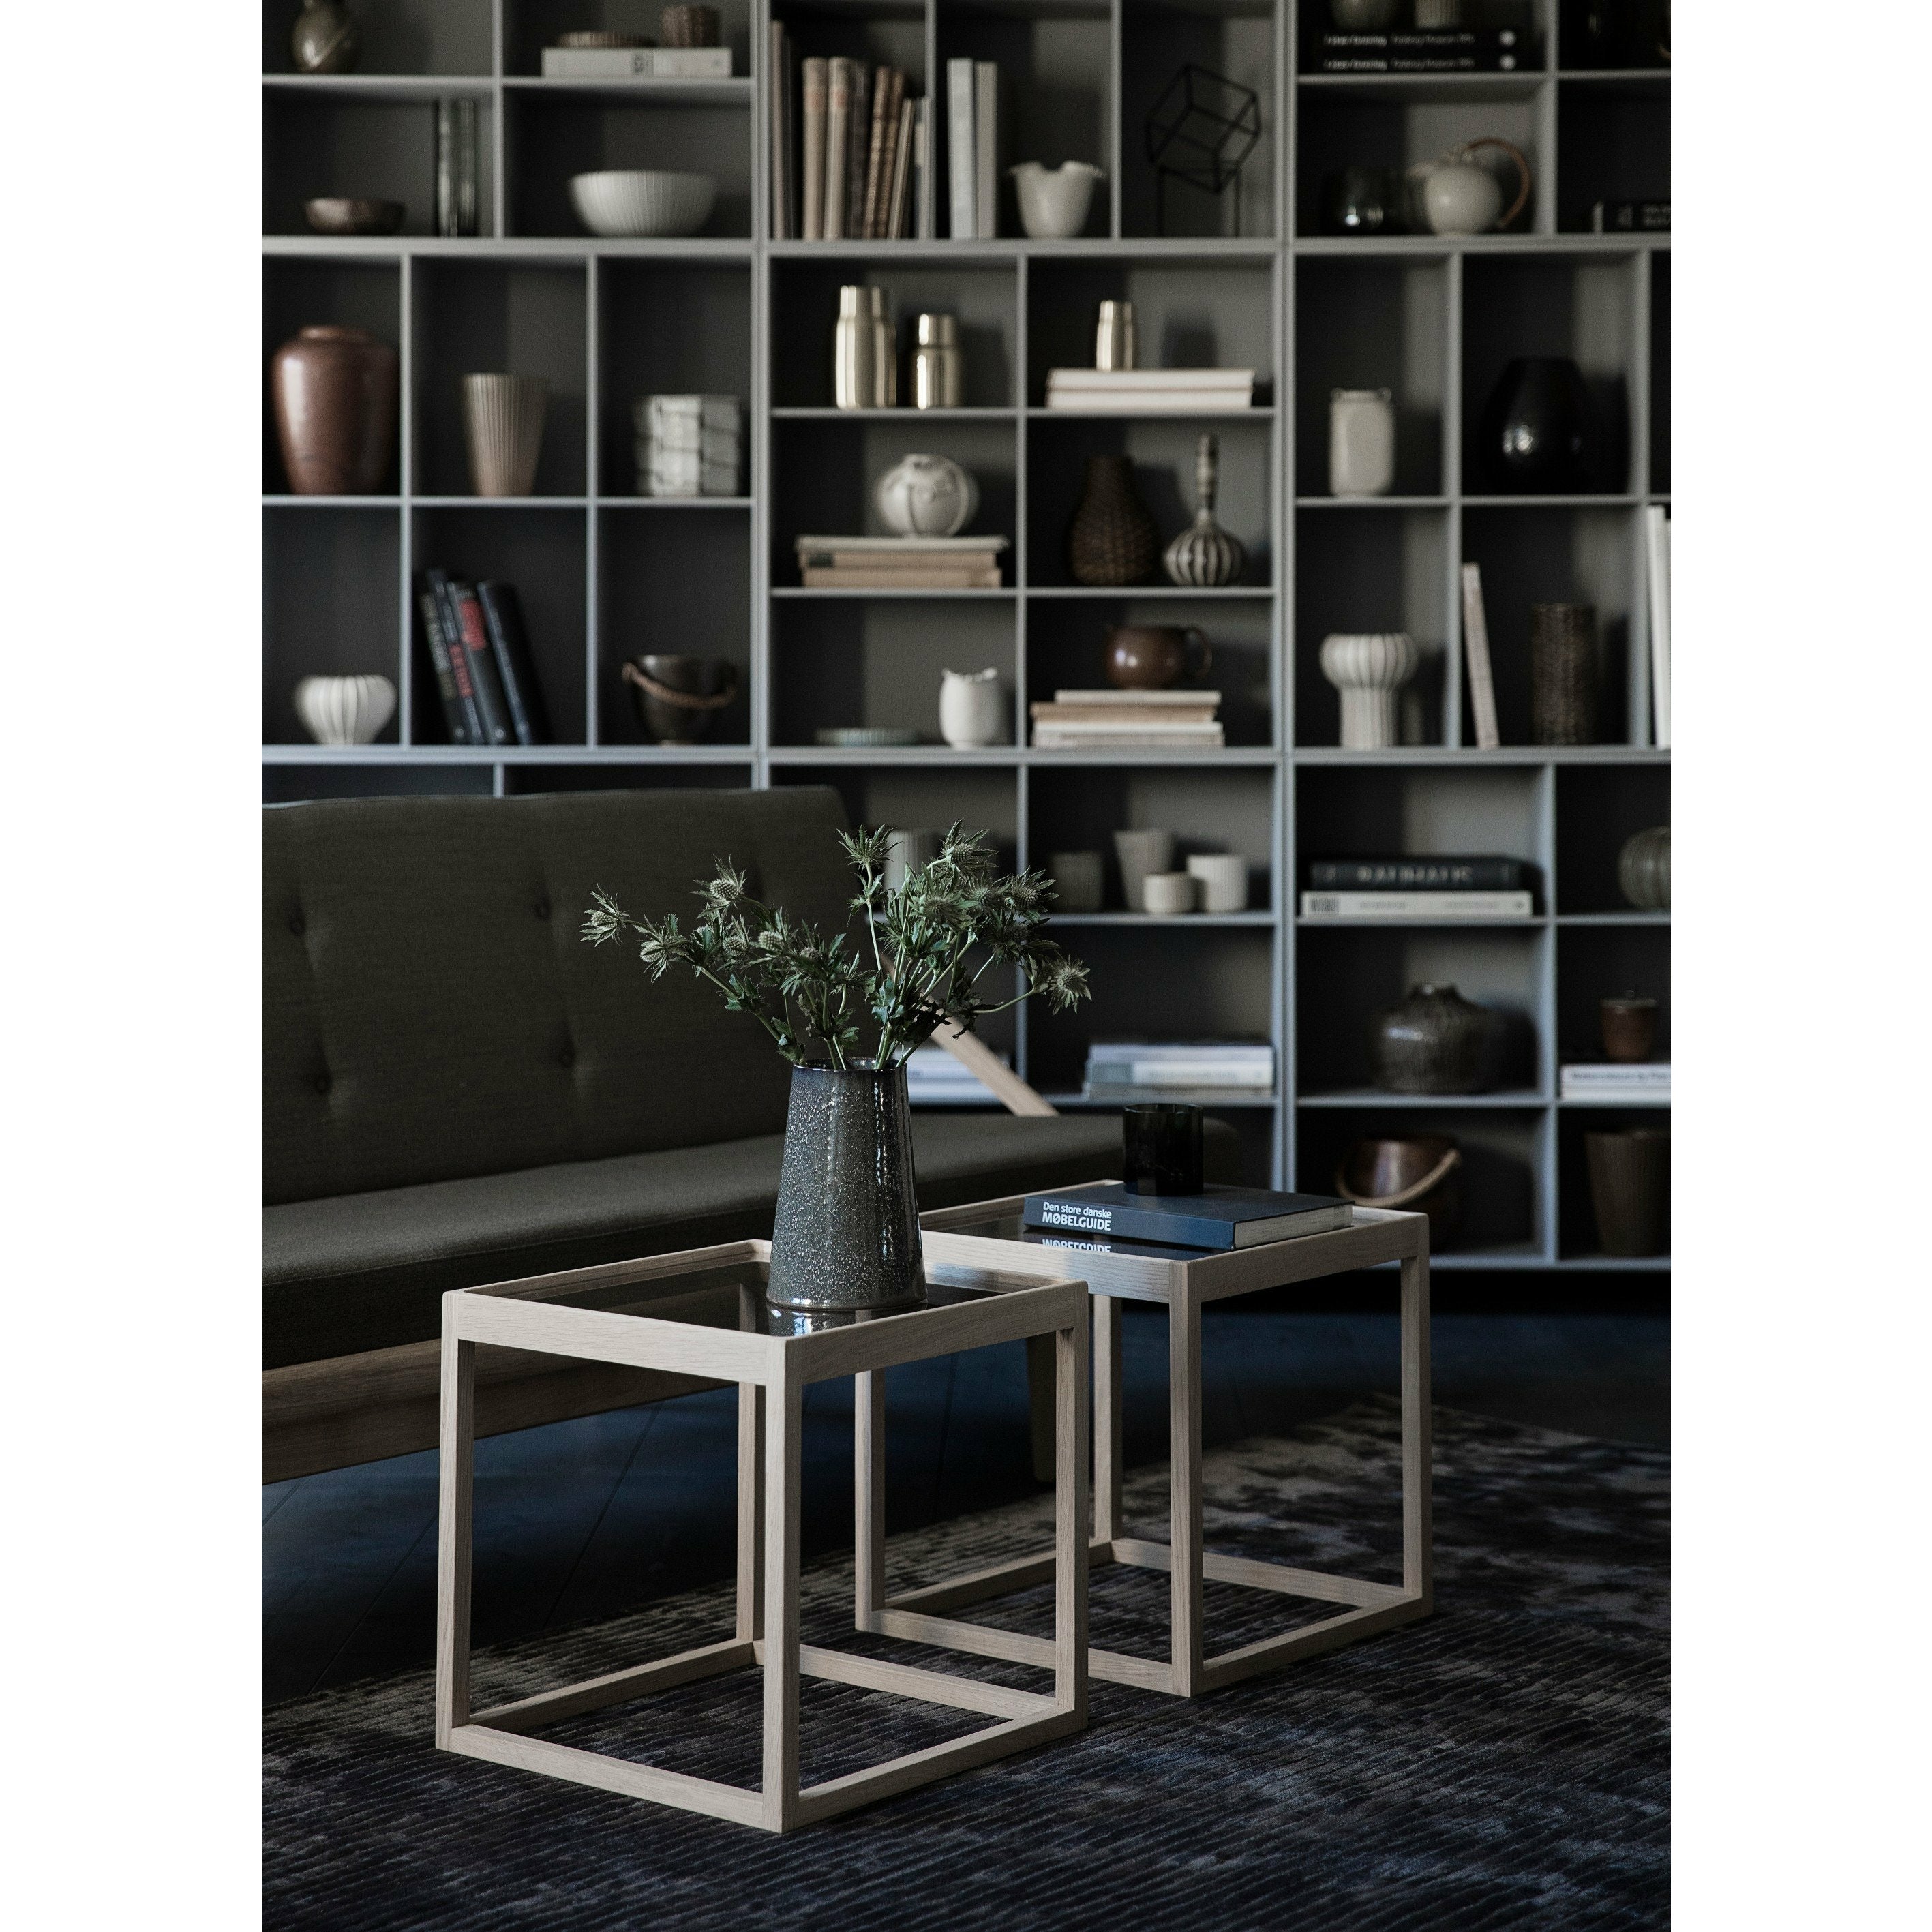 Table d'appoint Klassik Studio Kø Cube Chêne noir, verre fumé